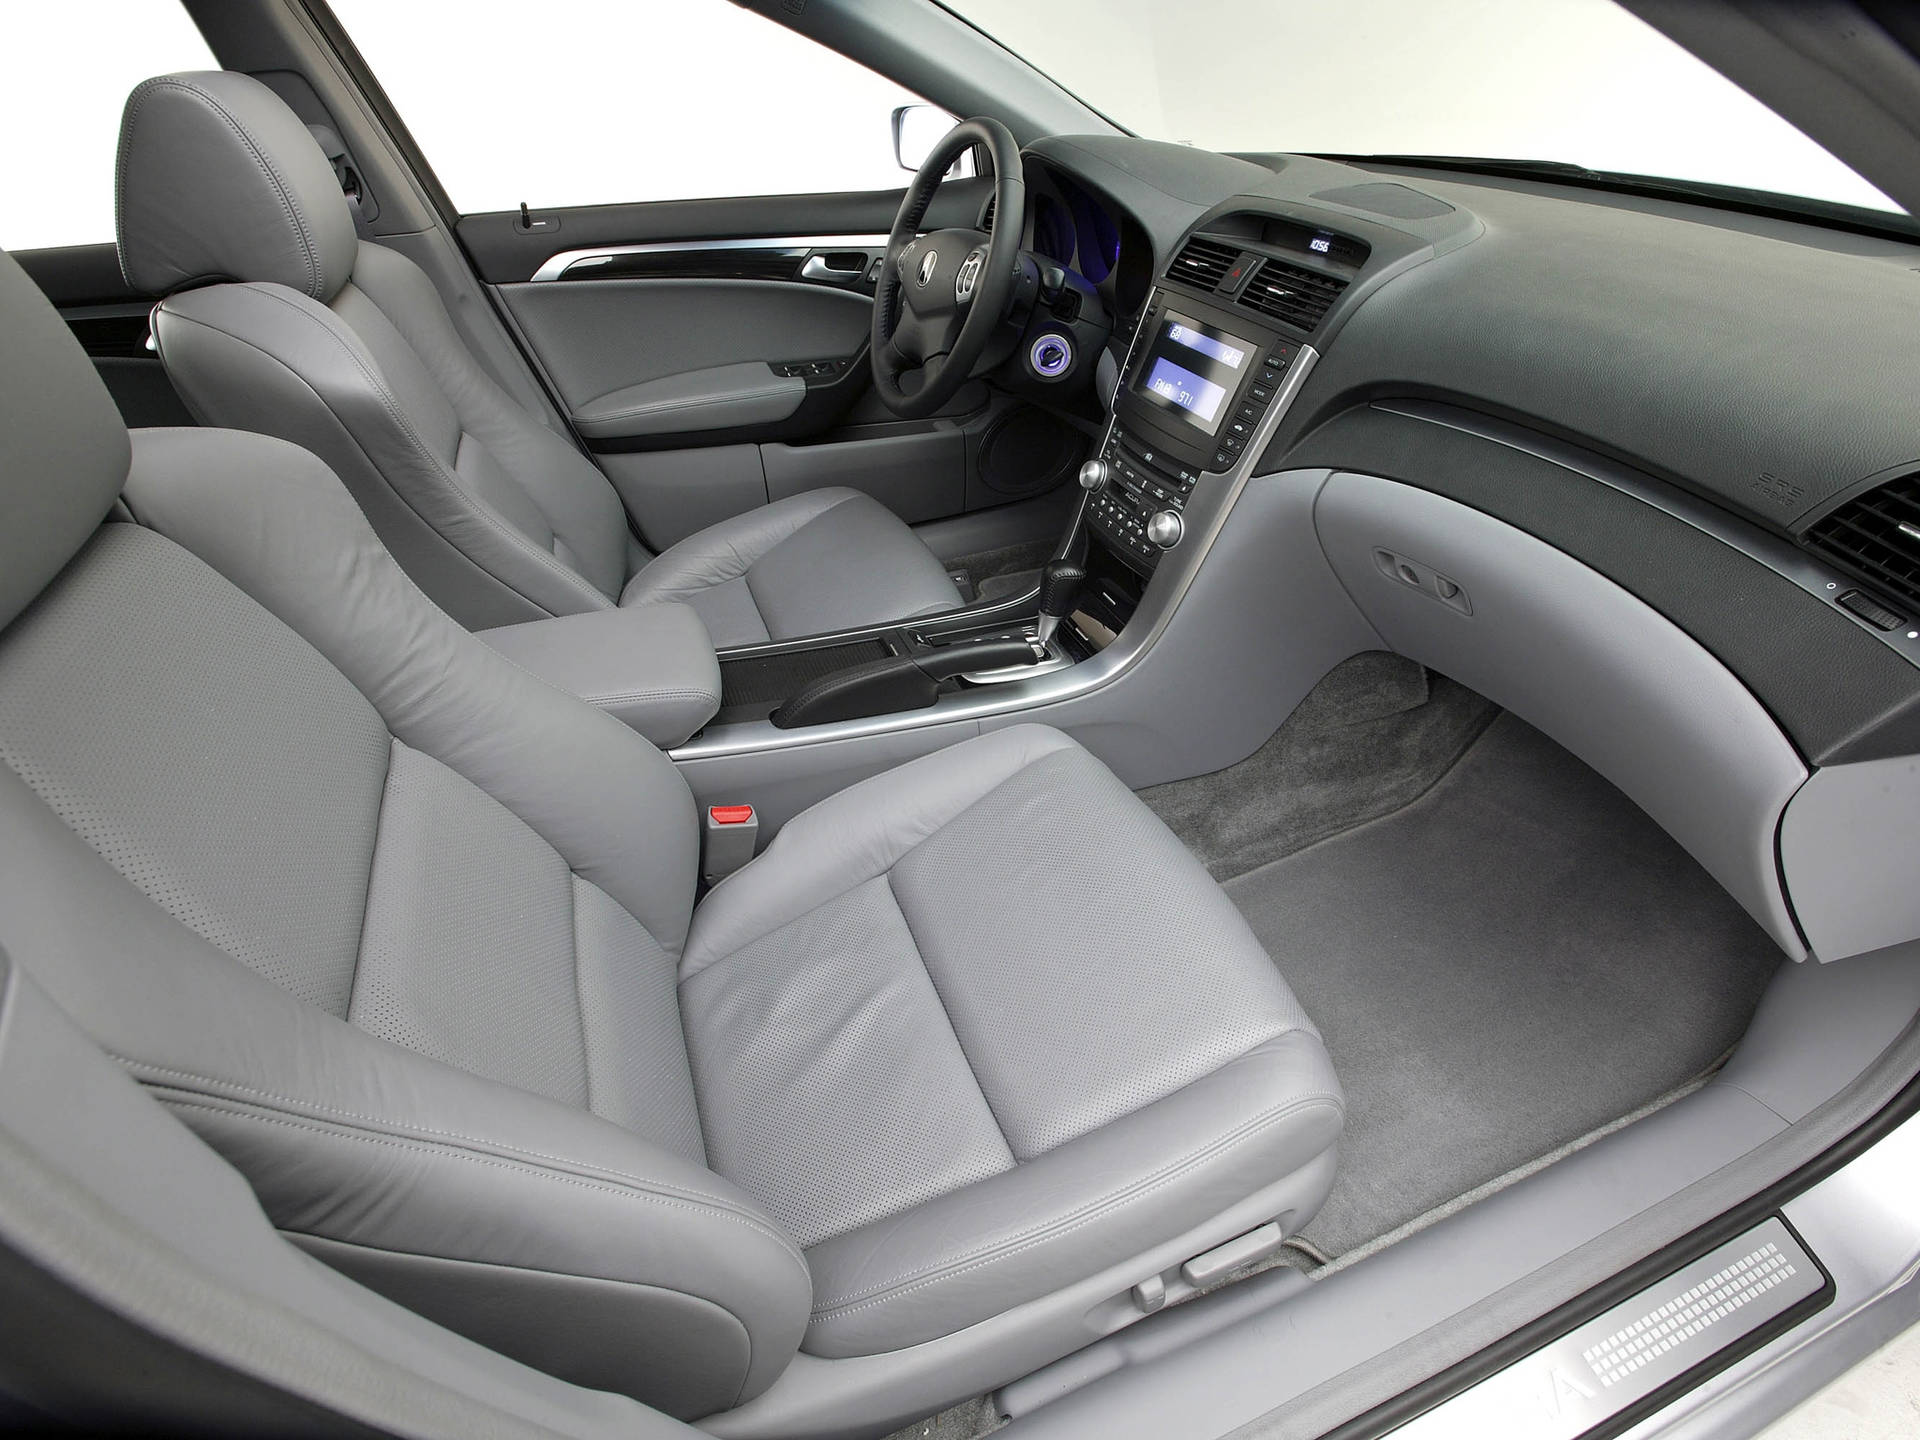 Silver Acura Interior Background